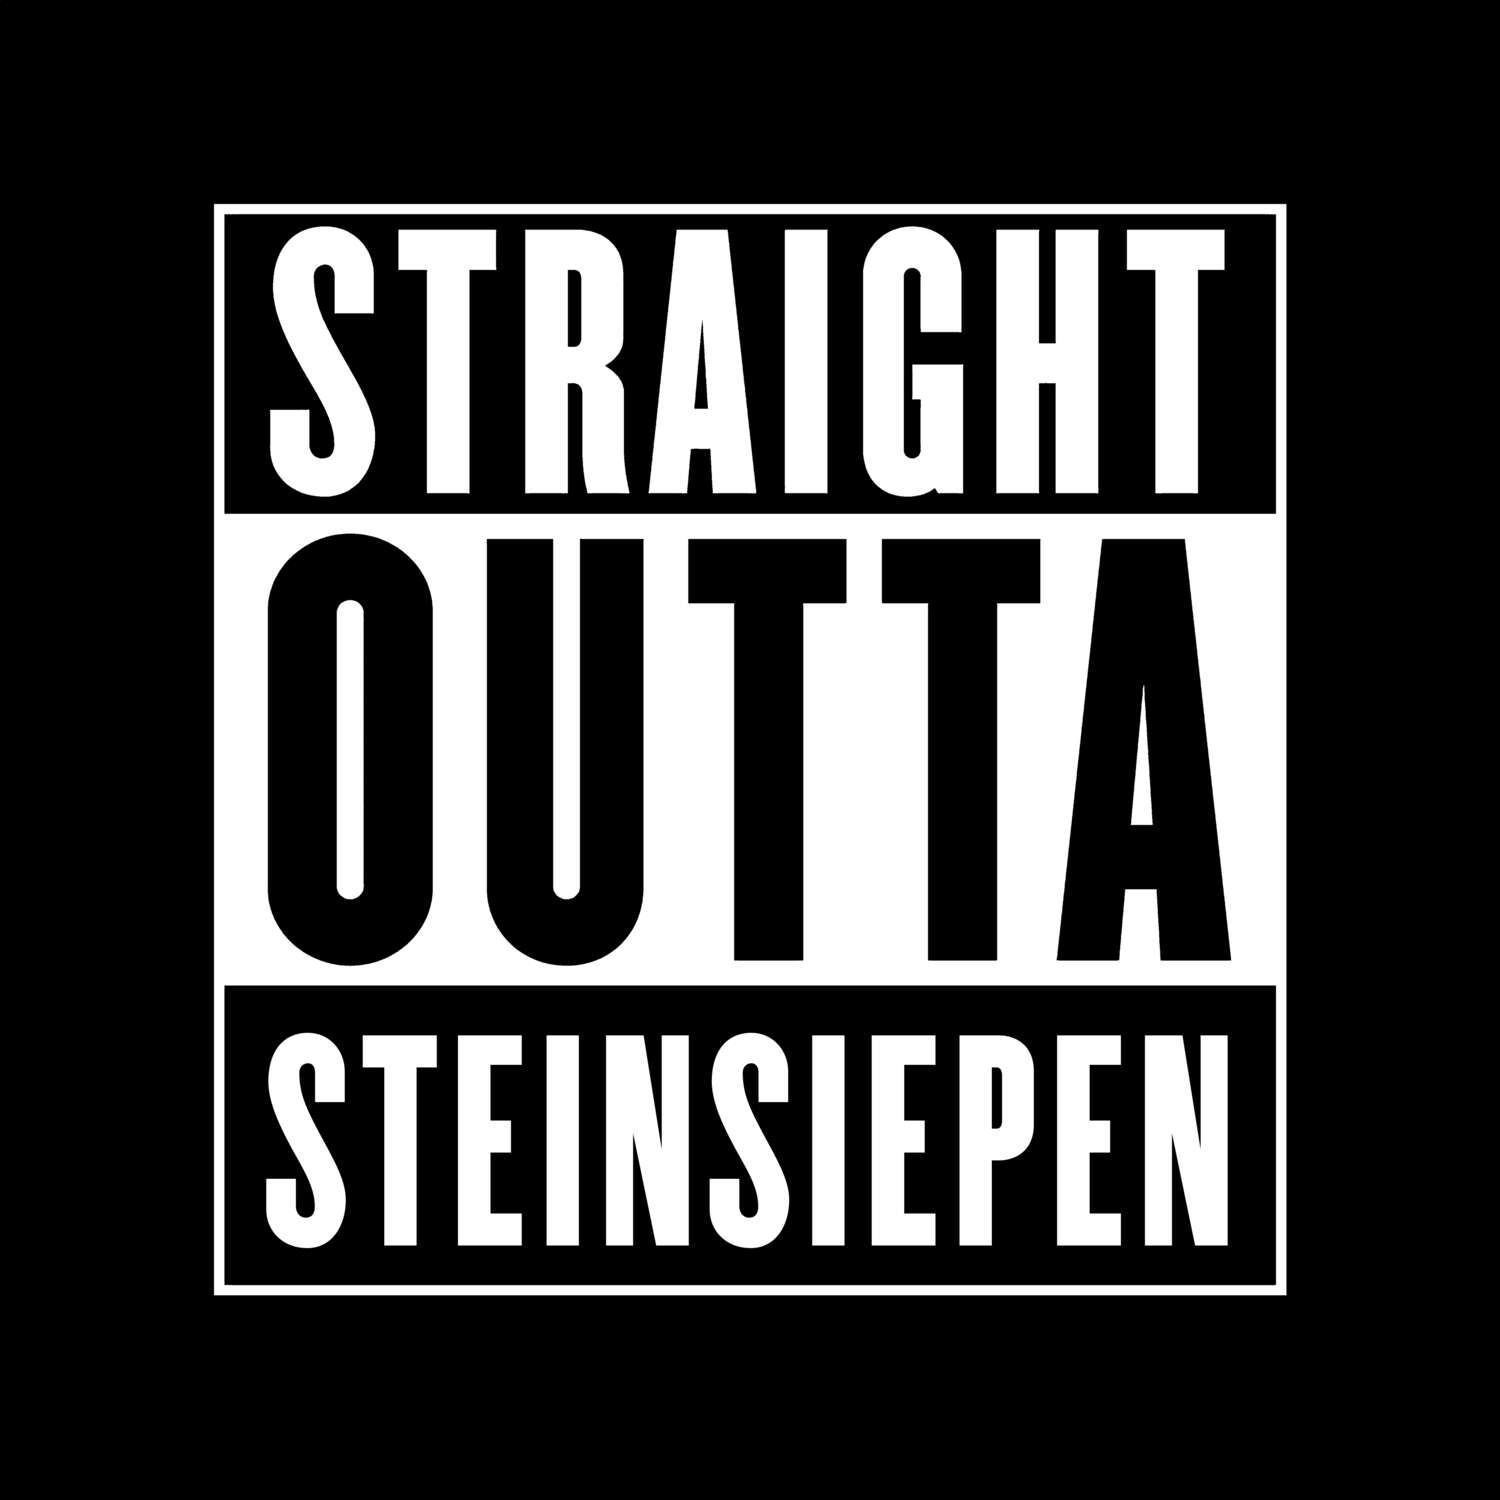 Steinsiepen T-Shirt »Straight Outta«